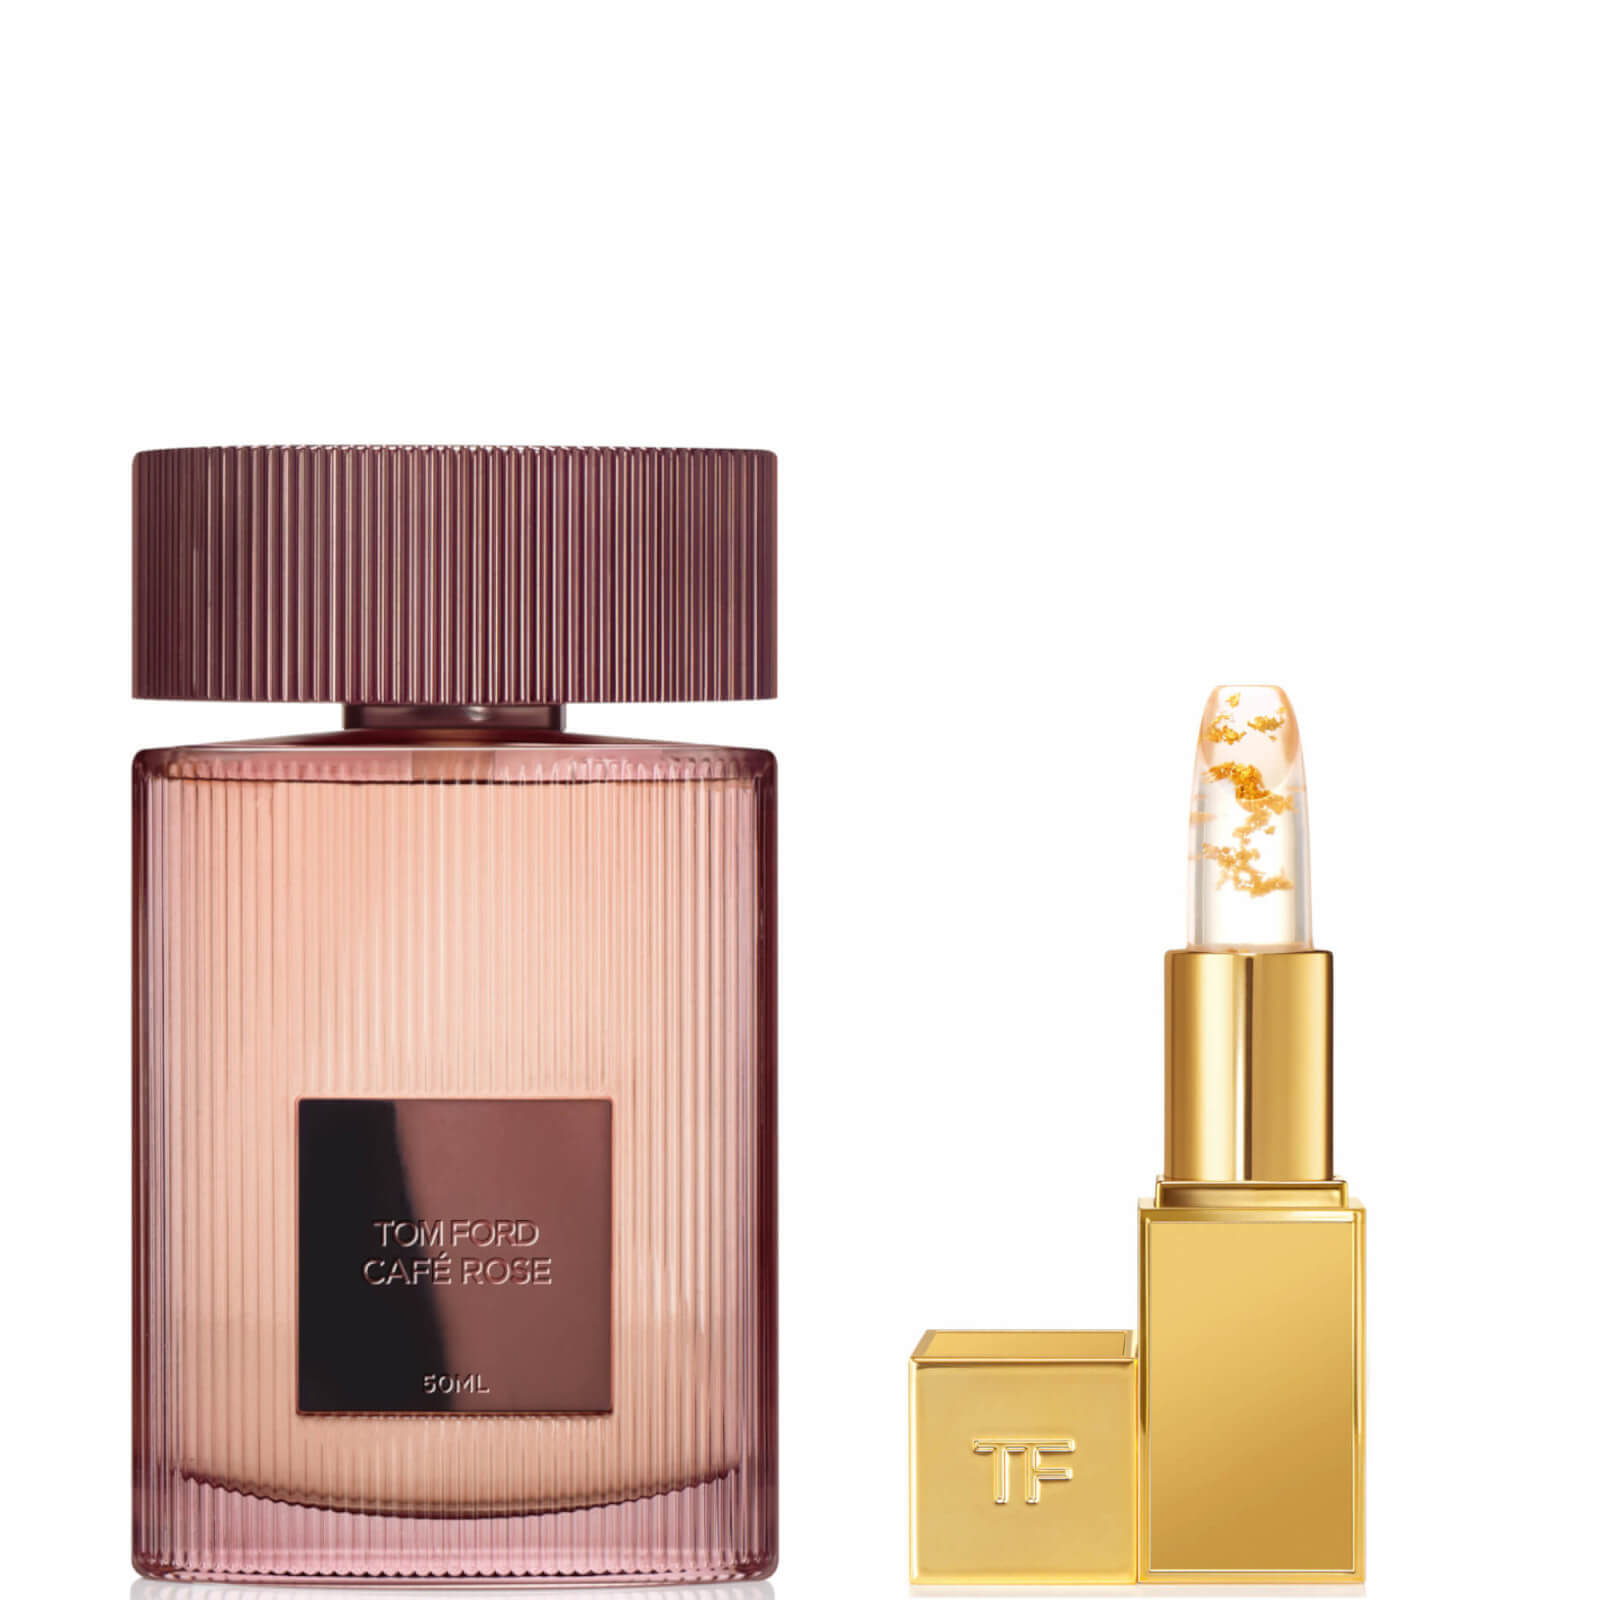 Photos - Women's Fragrance Tom Ford Café Rose Eau de Parfum 50ml and Lip Bundle TFCRSL050B 